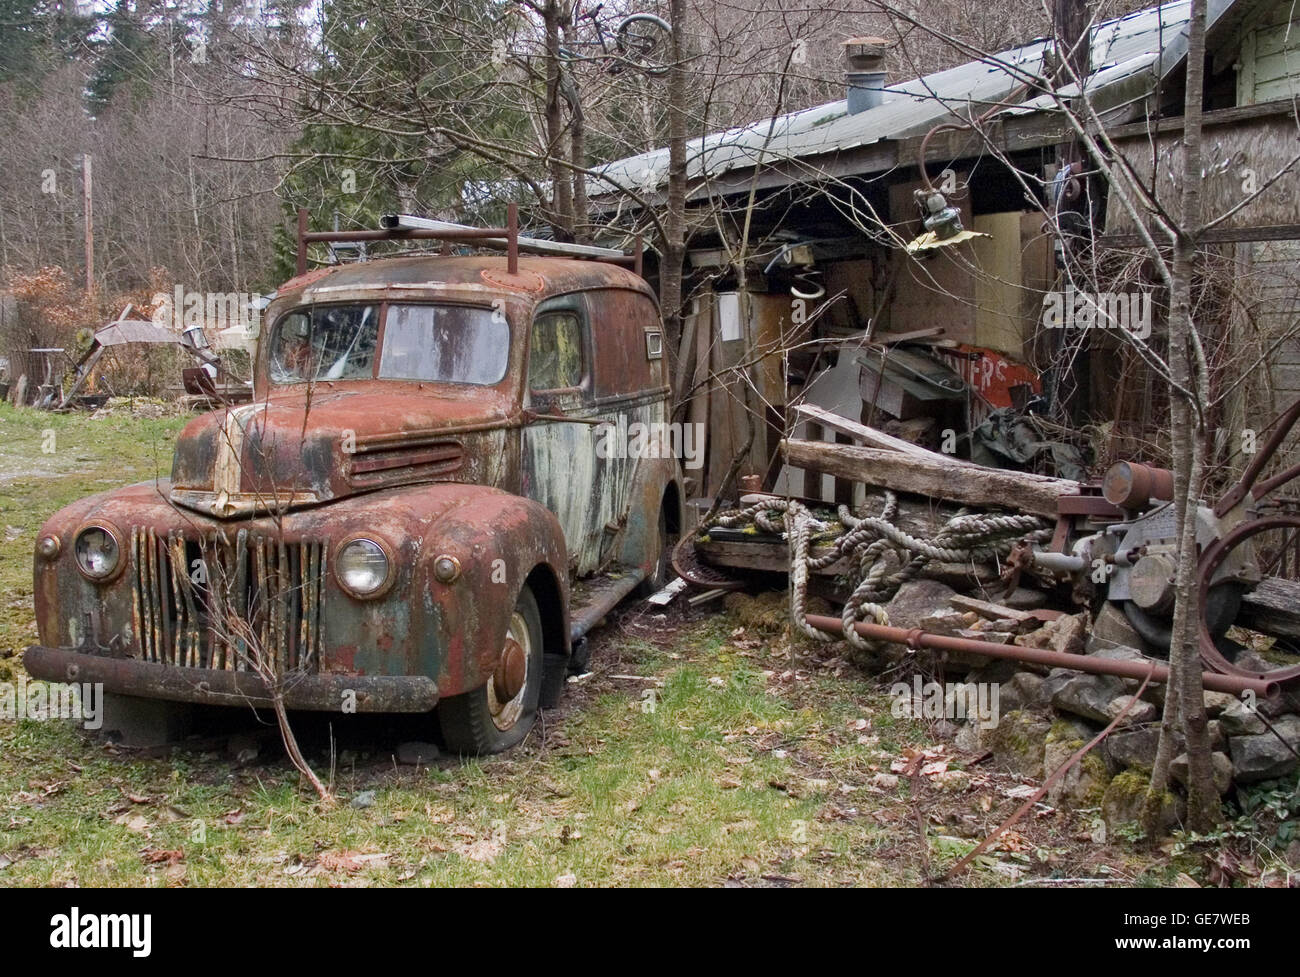 Un camion Ford abandonné et une résidence d'affaires déserte et délabrée fait le sujet de cette étude de photo nostalgique. Banque D'Images